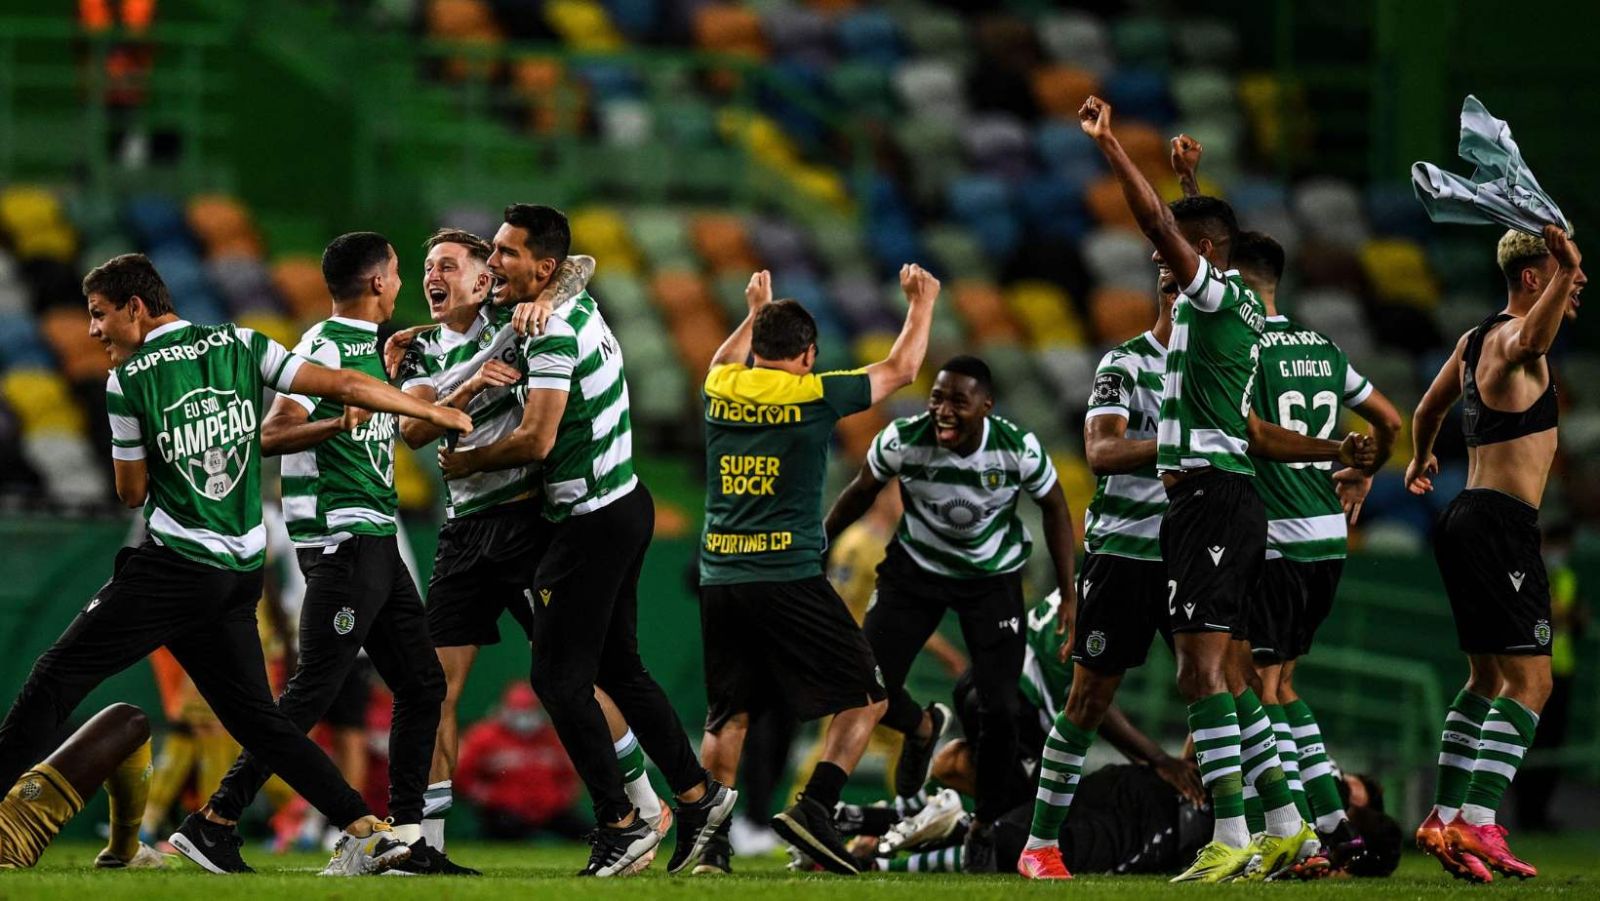 Pronostic Sporting Lisbonne - Portimonense : Analyse, compos probables et cotes du match